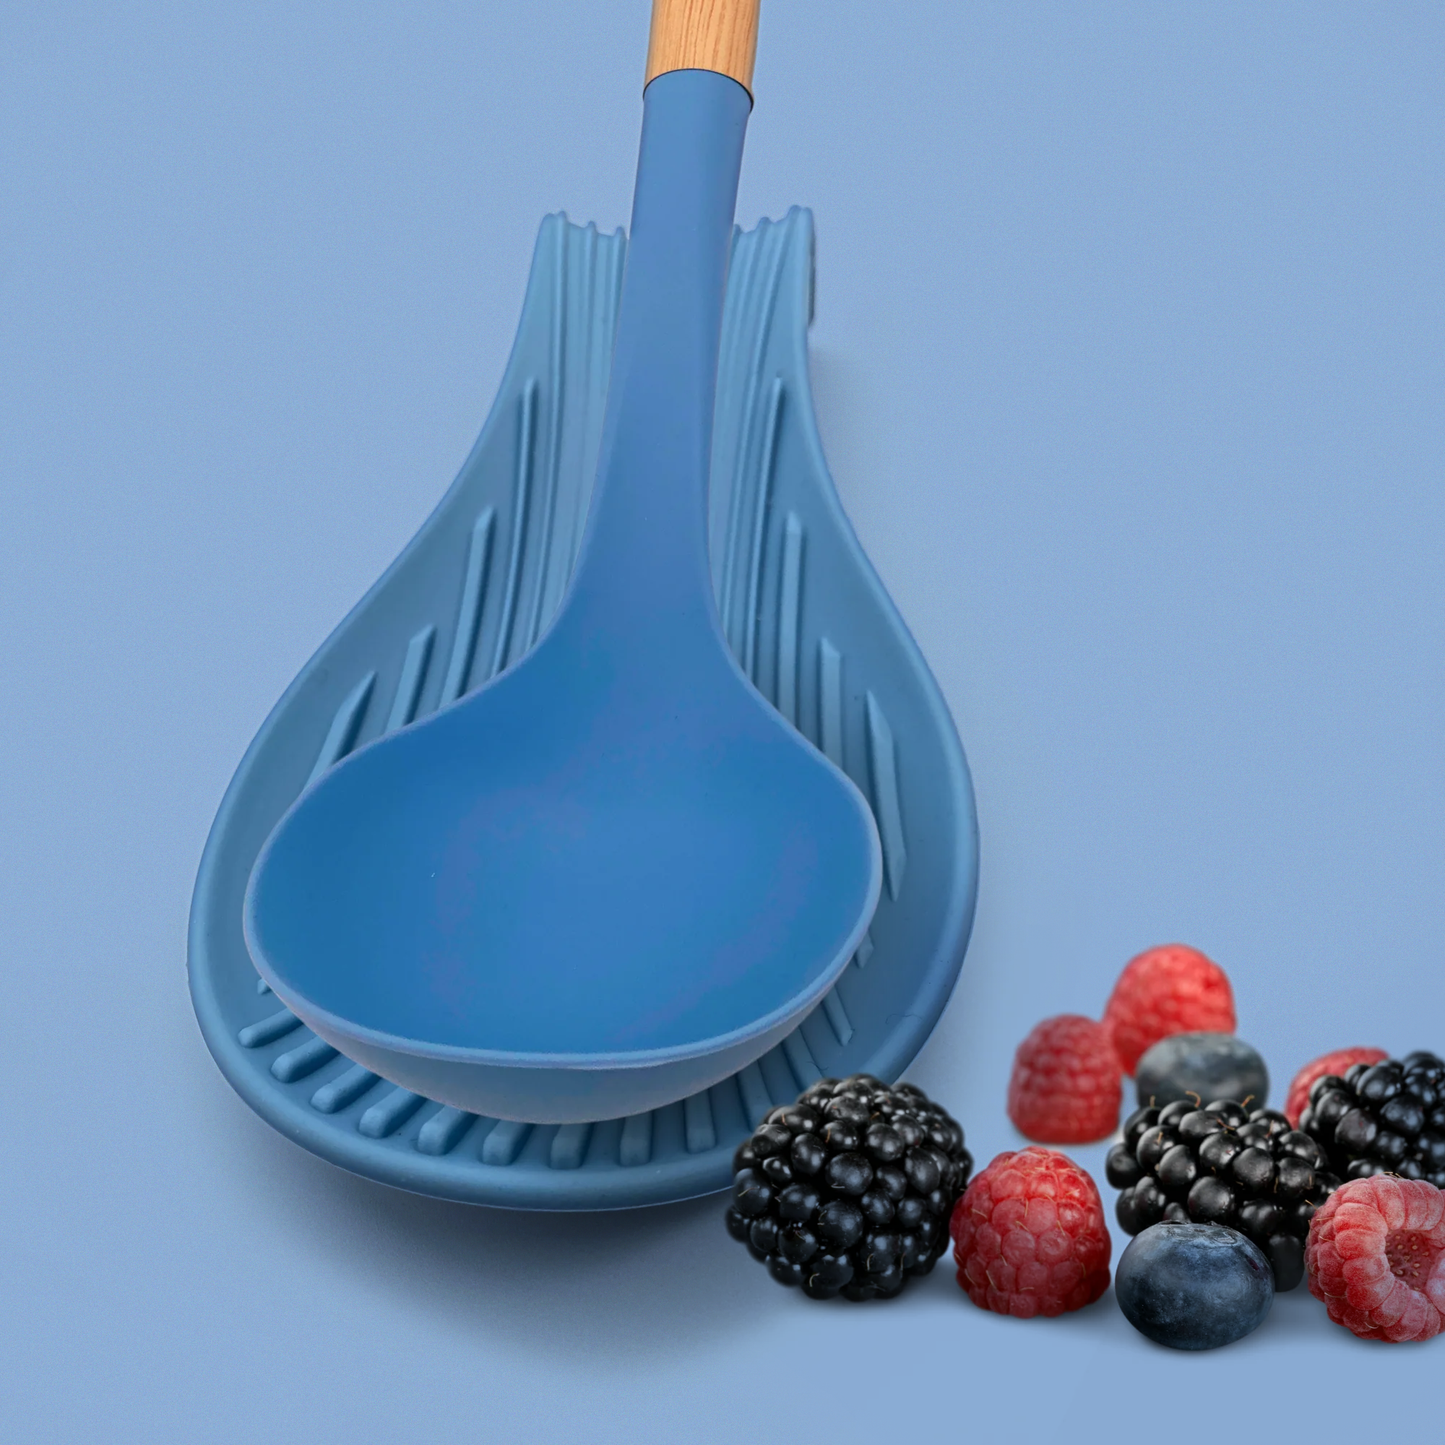 Soporte de silicona azul cielo para cucharas y utensilios de cocina